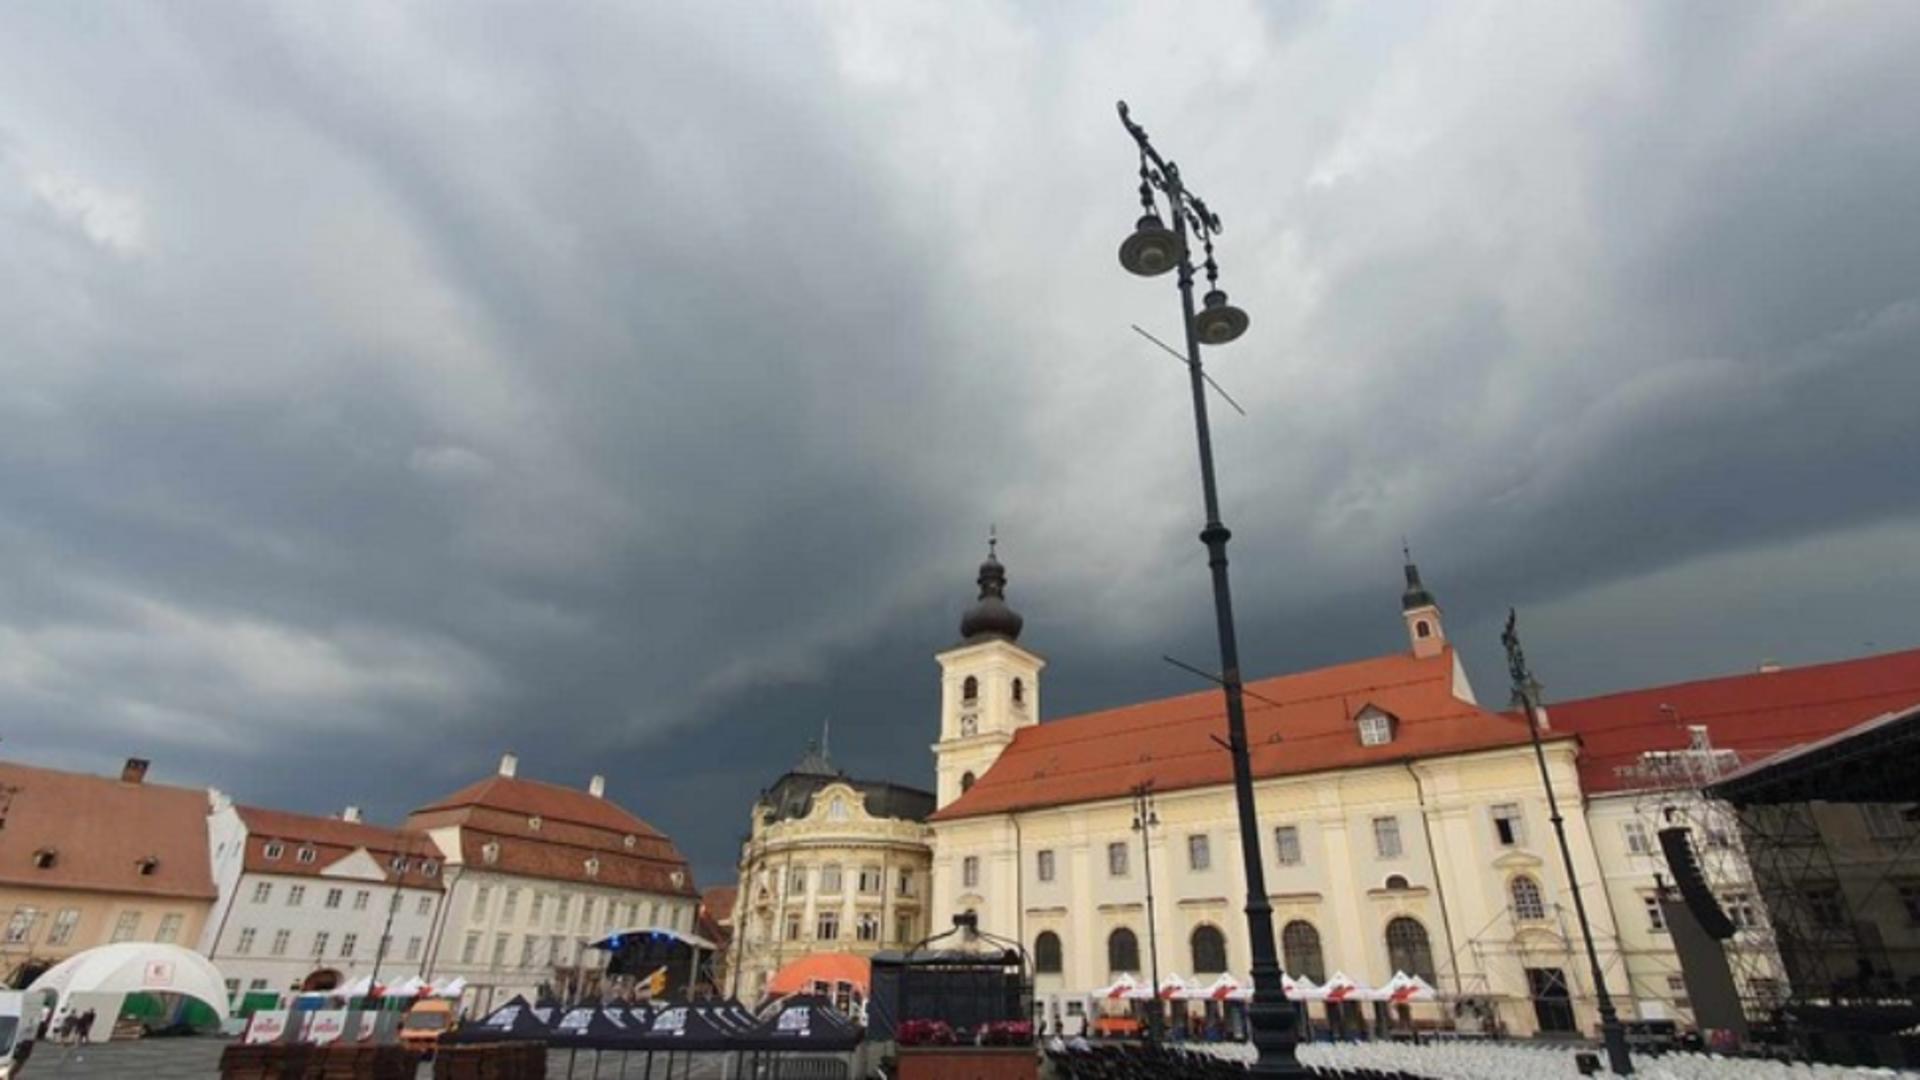 Matiz luat de vânt de pe o stradă din Sibiu, după o furtună puternică. Incredibil unde a ajuns mașina! – FOTO